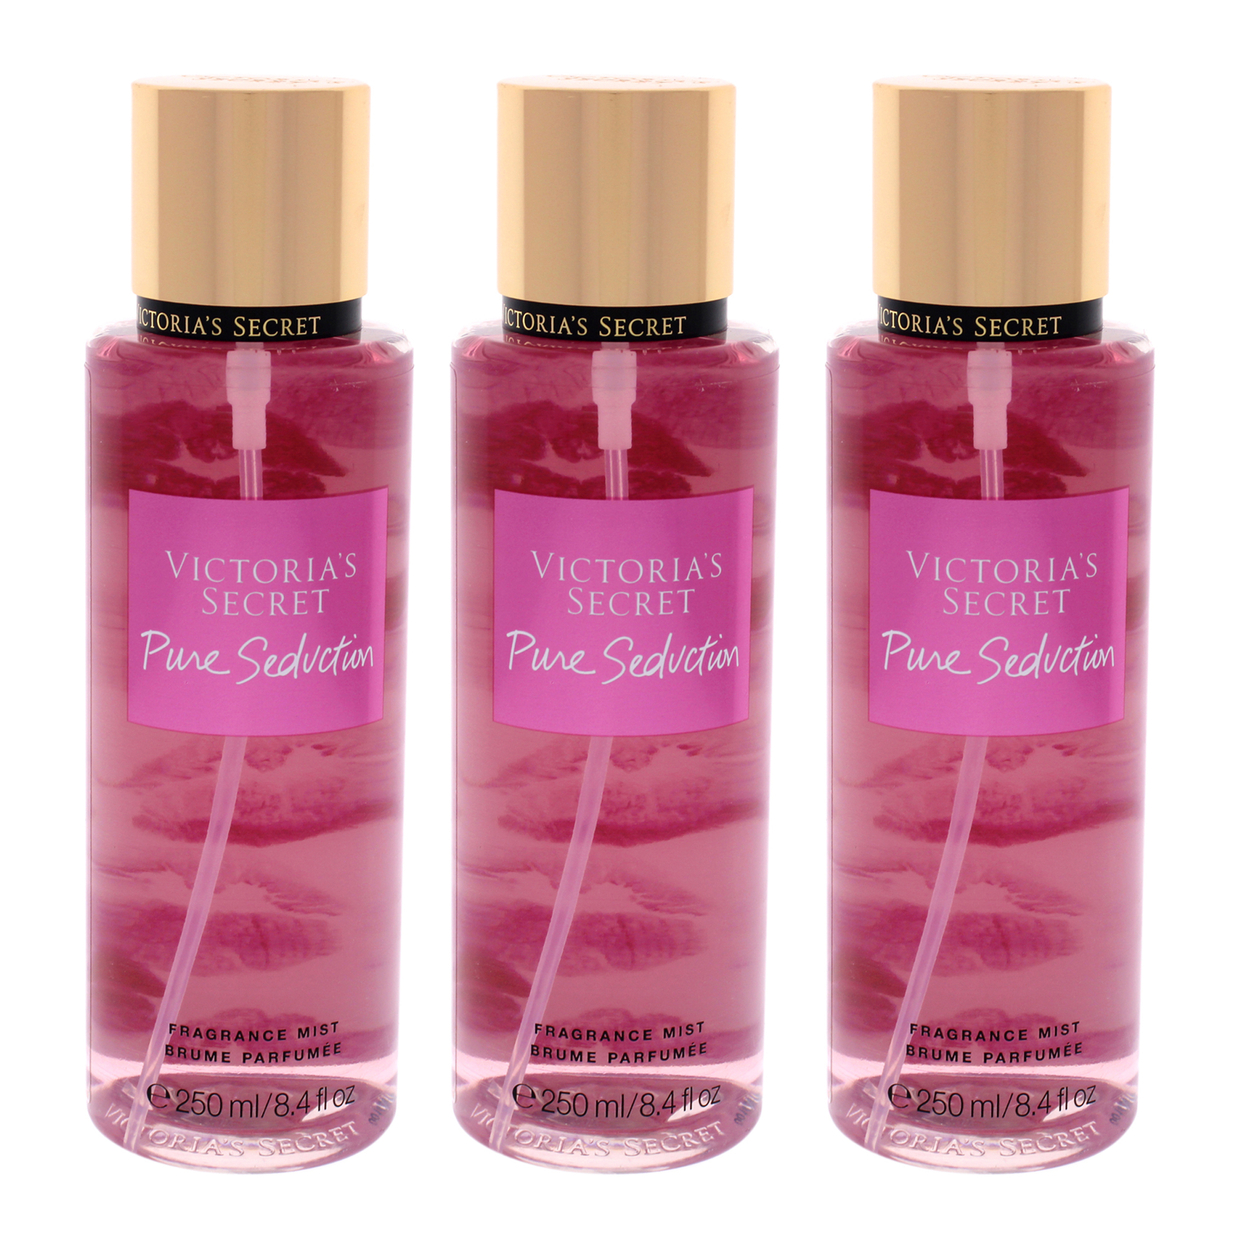 Victoria's Secret Pure Seduction - Pack Of 3 Fragrance Mist 8.4 Oz